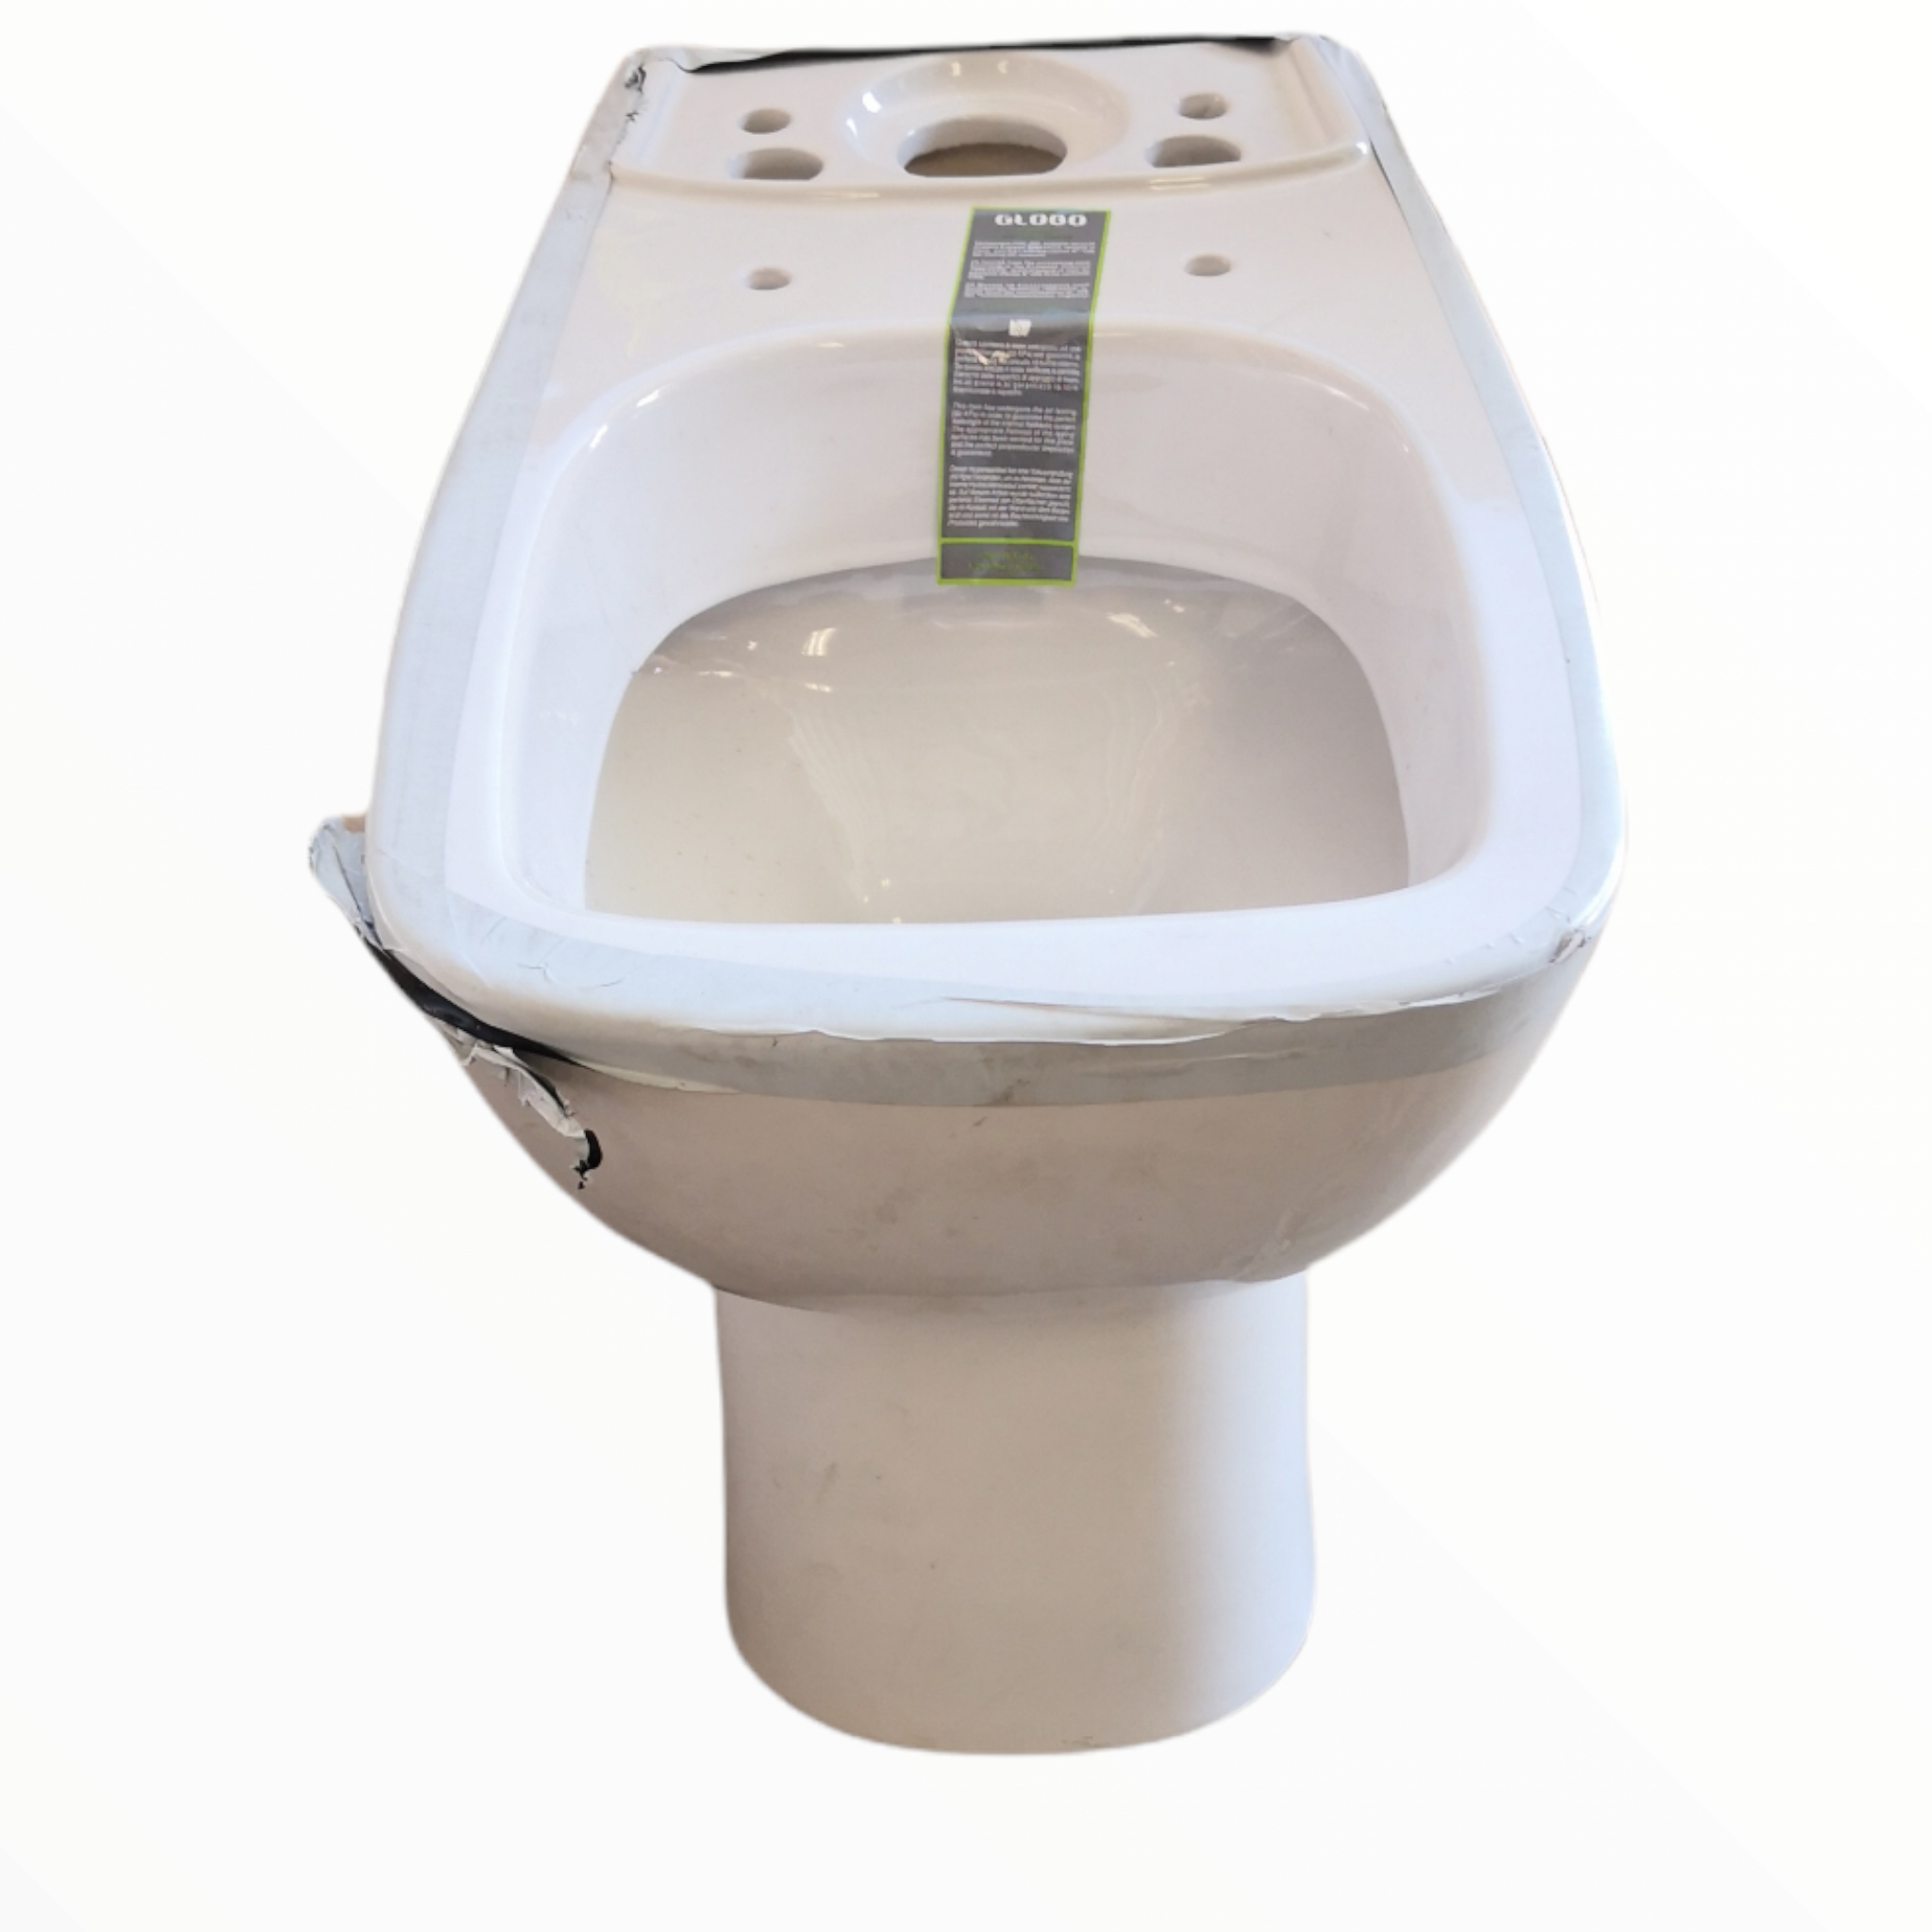 Taza wc de baño Globo DA003 con accesorios – Sesuconsa by Proveer de Mexico